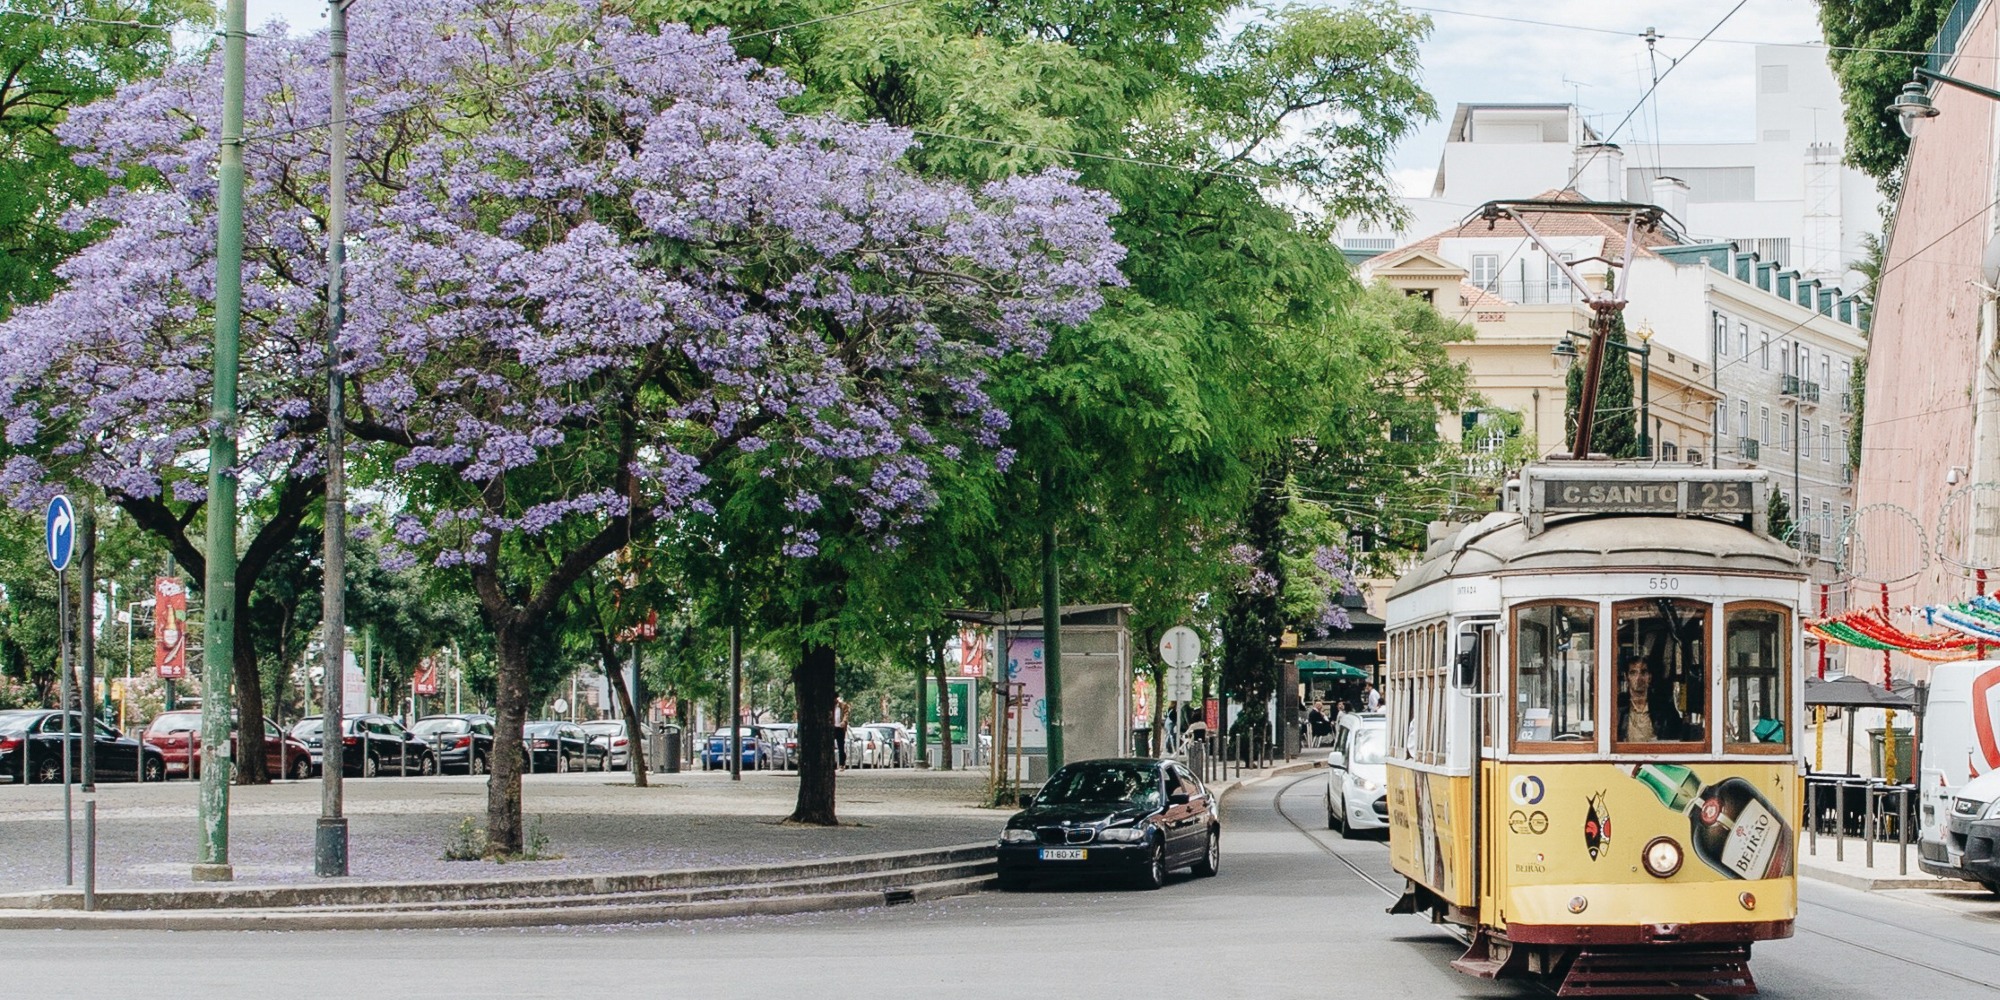 Tram in Santos, Lisbon